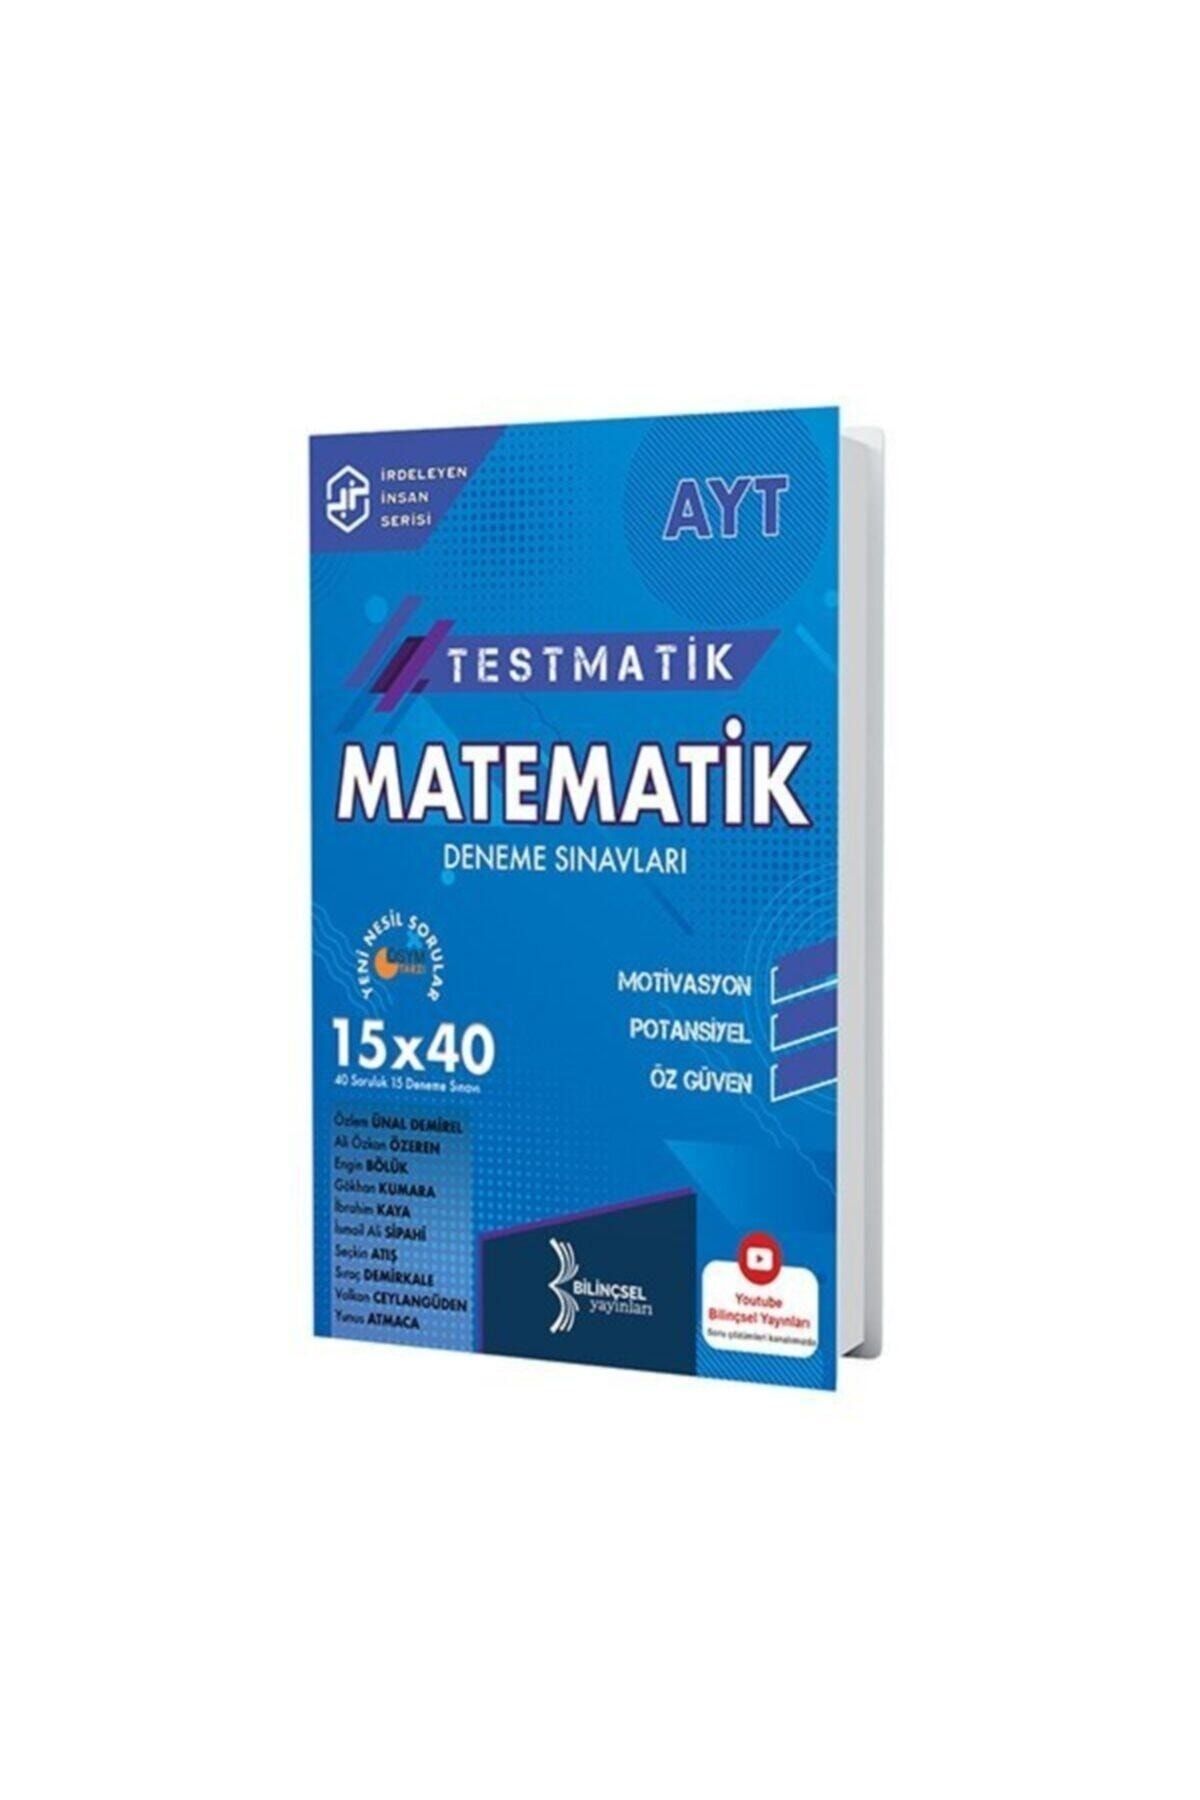 Bilinçsel Yayınları 2021 Ayt Testmatik Matematik Deneme Sınavları